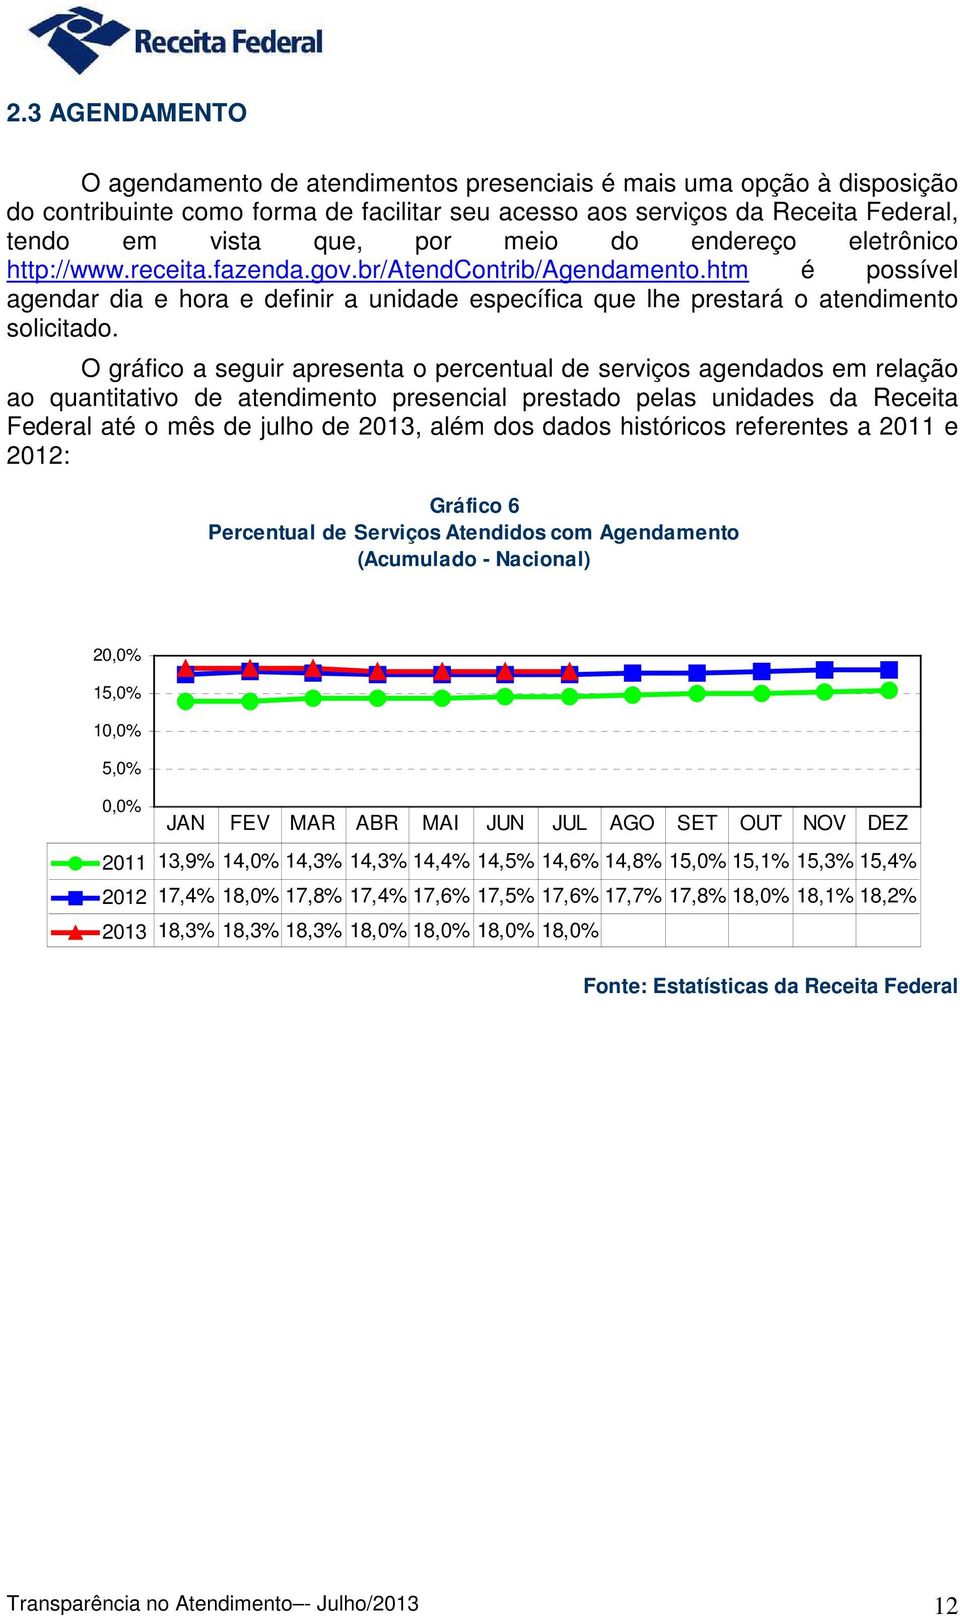 O gráfico a seguir apresenta o percentual de serviços agendados em relação ao quantitativo de atendimento presencial prestado pelas unidades da Receita Federal até o mês de julho de 2013, além dos